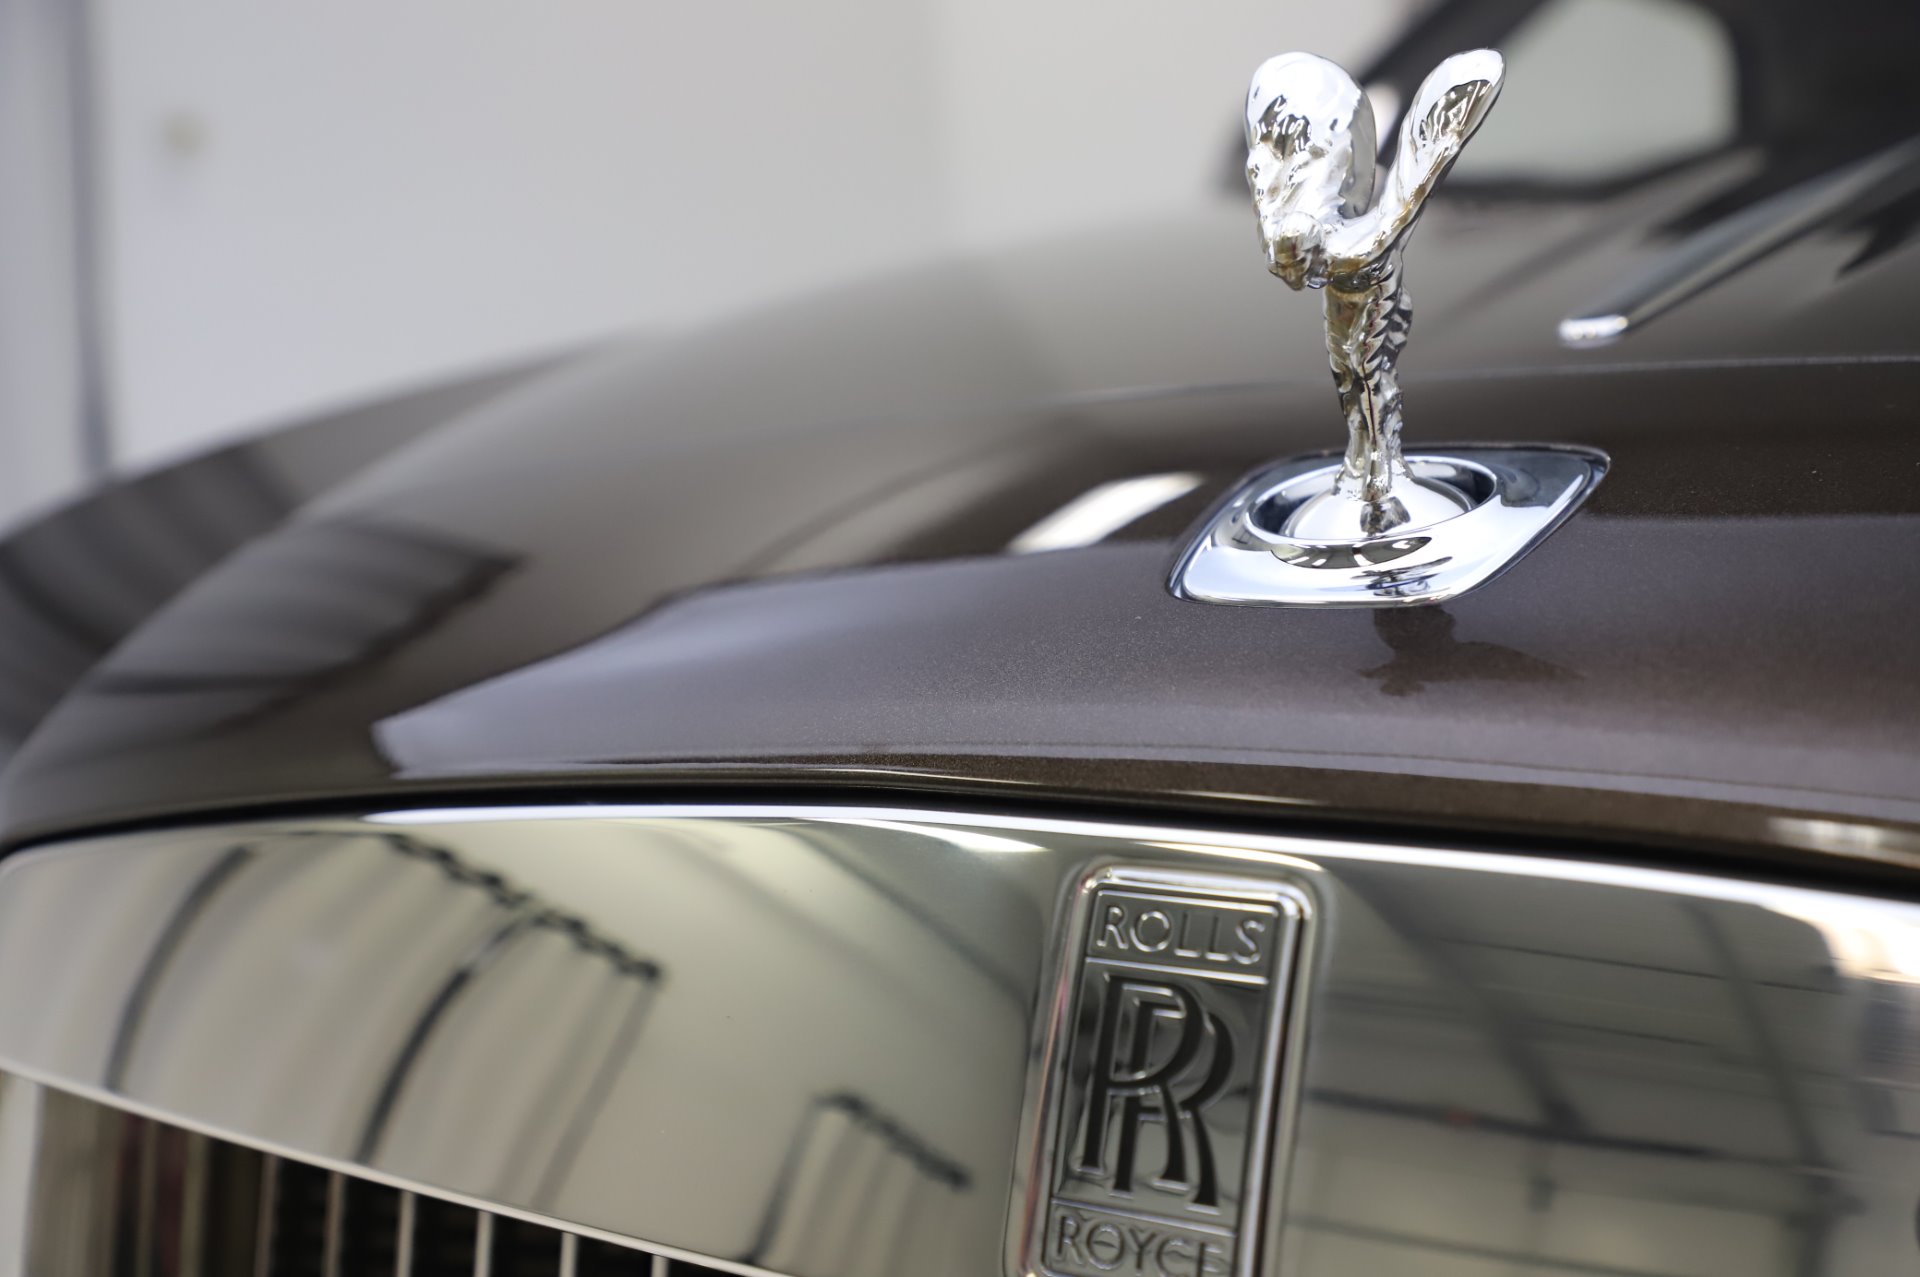 Used-2017-Rolls-Royce-Dawn